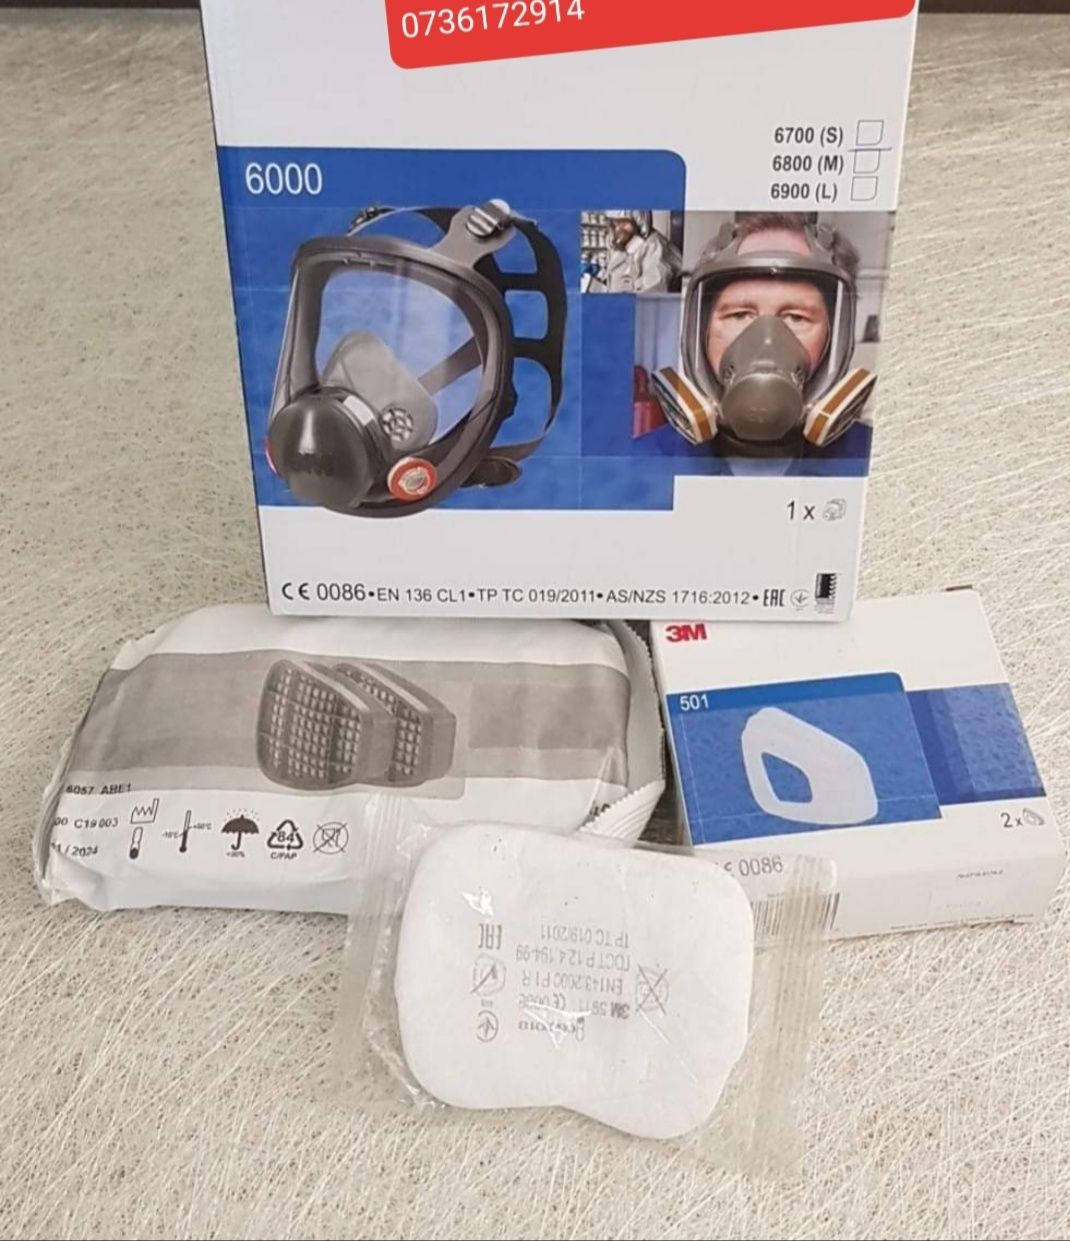 Masca de protectie 3M 6800 integrală cu vizieră , completă cu filtre